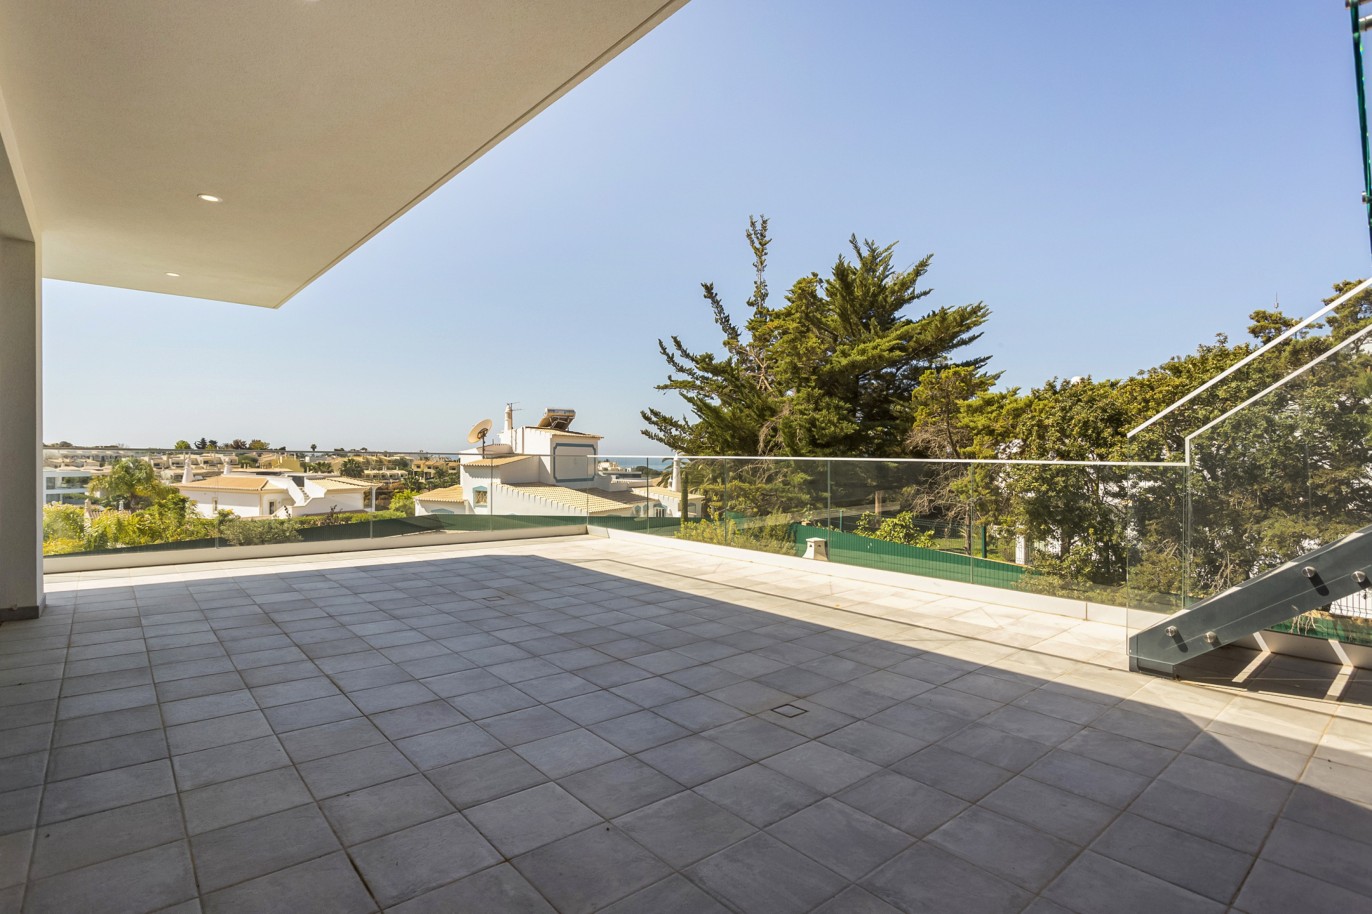 4 Bedroom Villa, with swimming pool, for sale, in Ferragudo, Algarve_222743